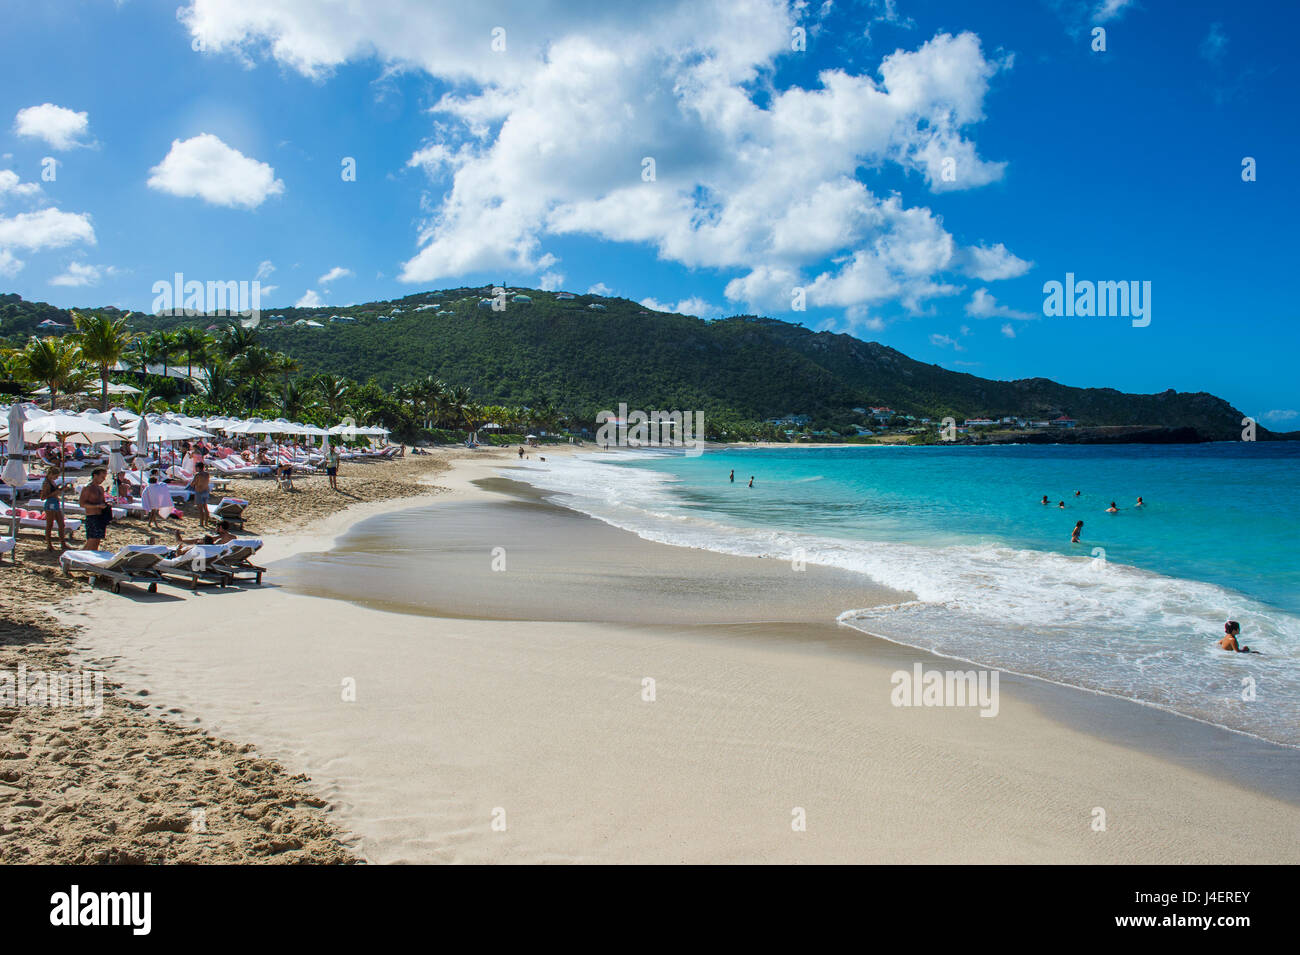 Flamand Plage, St Barth (Saint Barthelemy), Petites Antilles, Antilles, Caraïbes, Amérique Centrale Banque D'Images